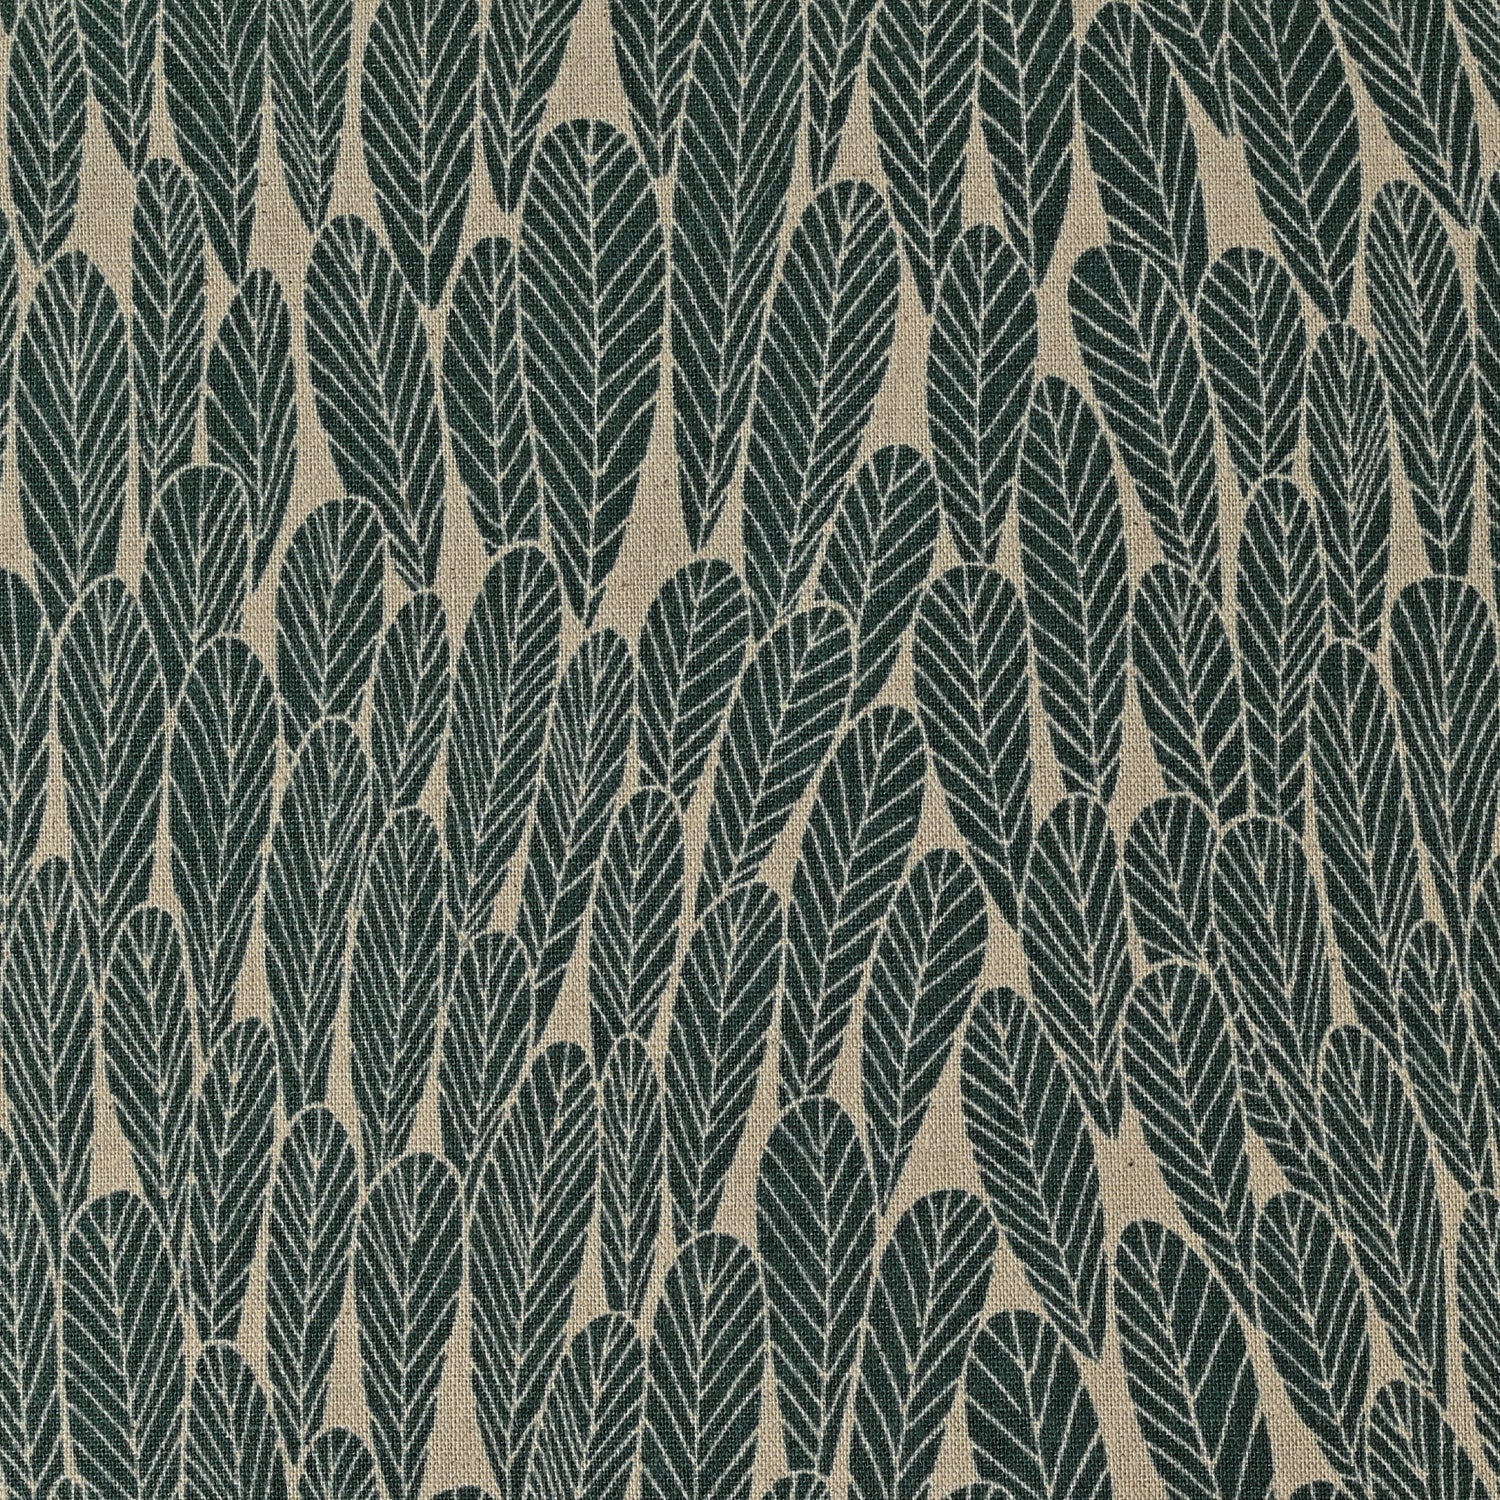 Bloom by Bookhou - Leaf Cotton Linen Canvas EKX-1400-3